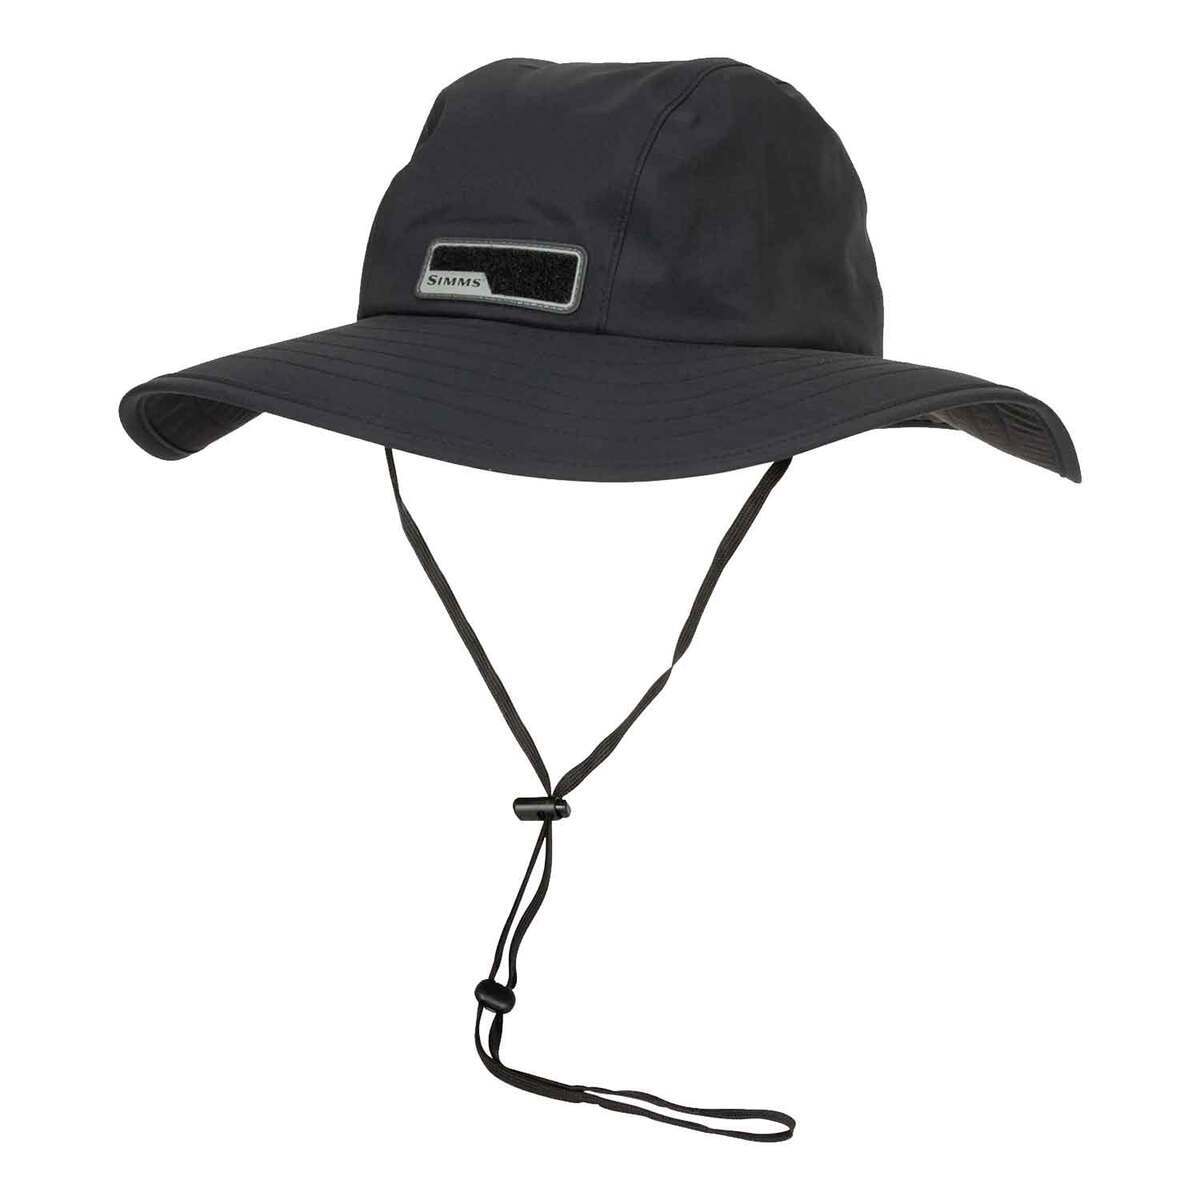 Simms GORE-TEX Guide Sombrero Sun Hat - Black - One Size Fits Most - Black  One Size Fits Most